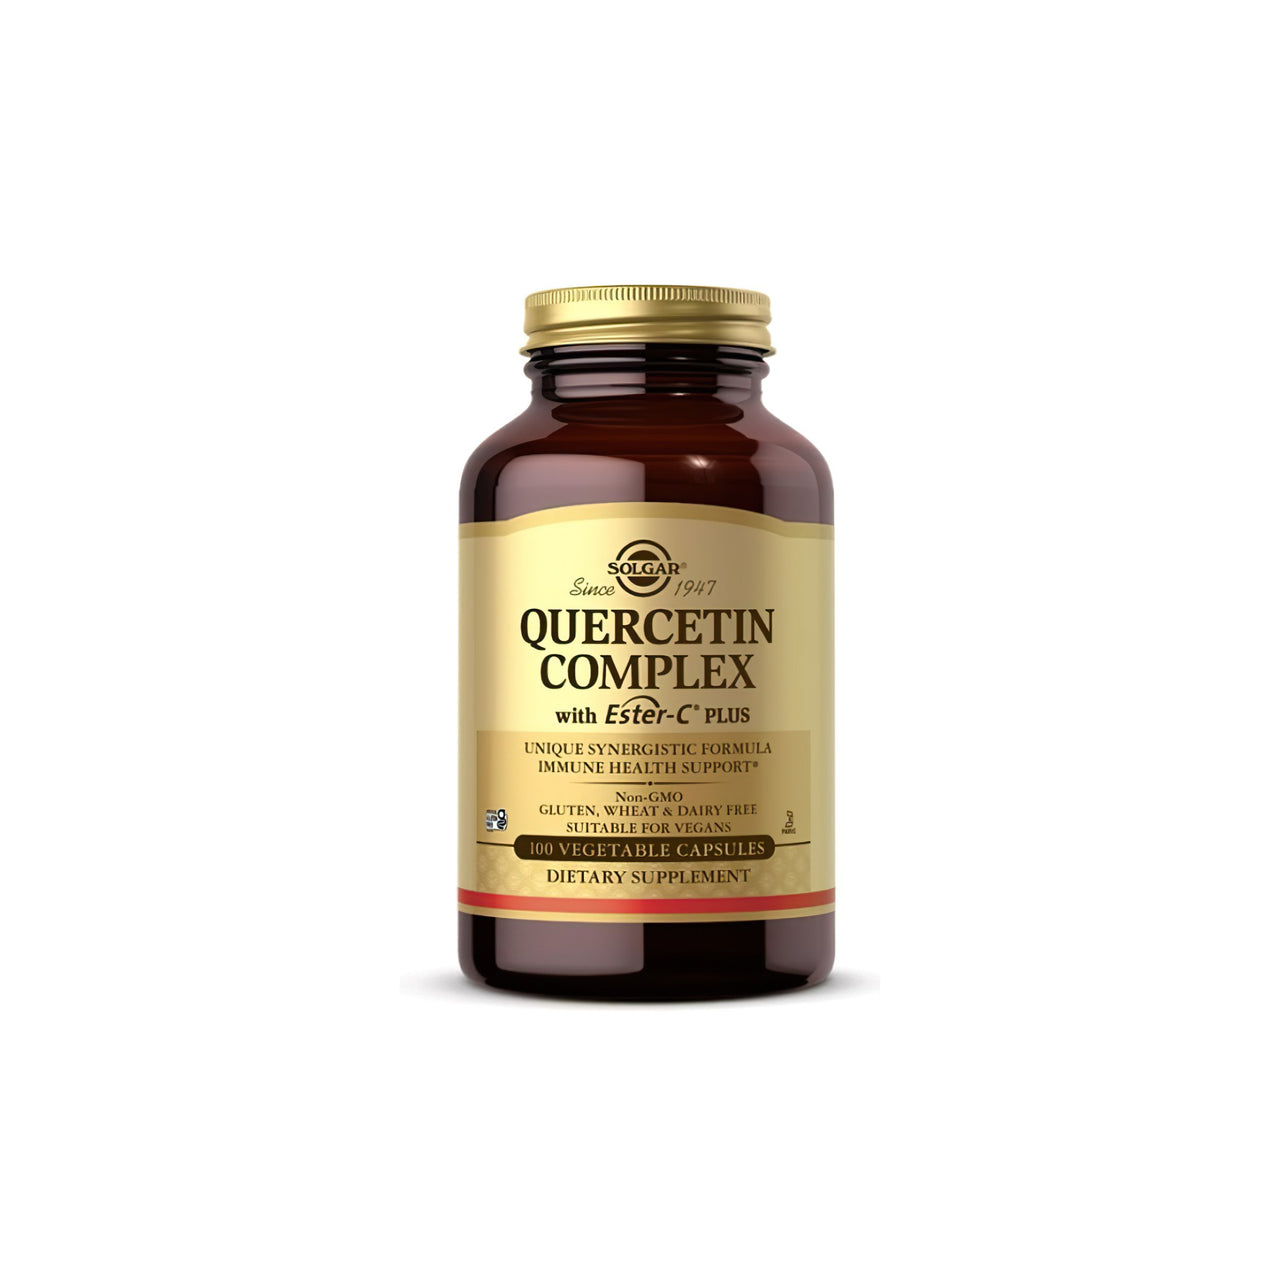 SolgarO Complexo de Quercetina com Ester-C Plus cápsulas vegetais é um suplemento poderoso que apoia a saúde imunitária. Embalado com a bondade da vitamina C, cada frasco Solgar contém 60 cápsulas para promover o bem-estar geral.